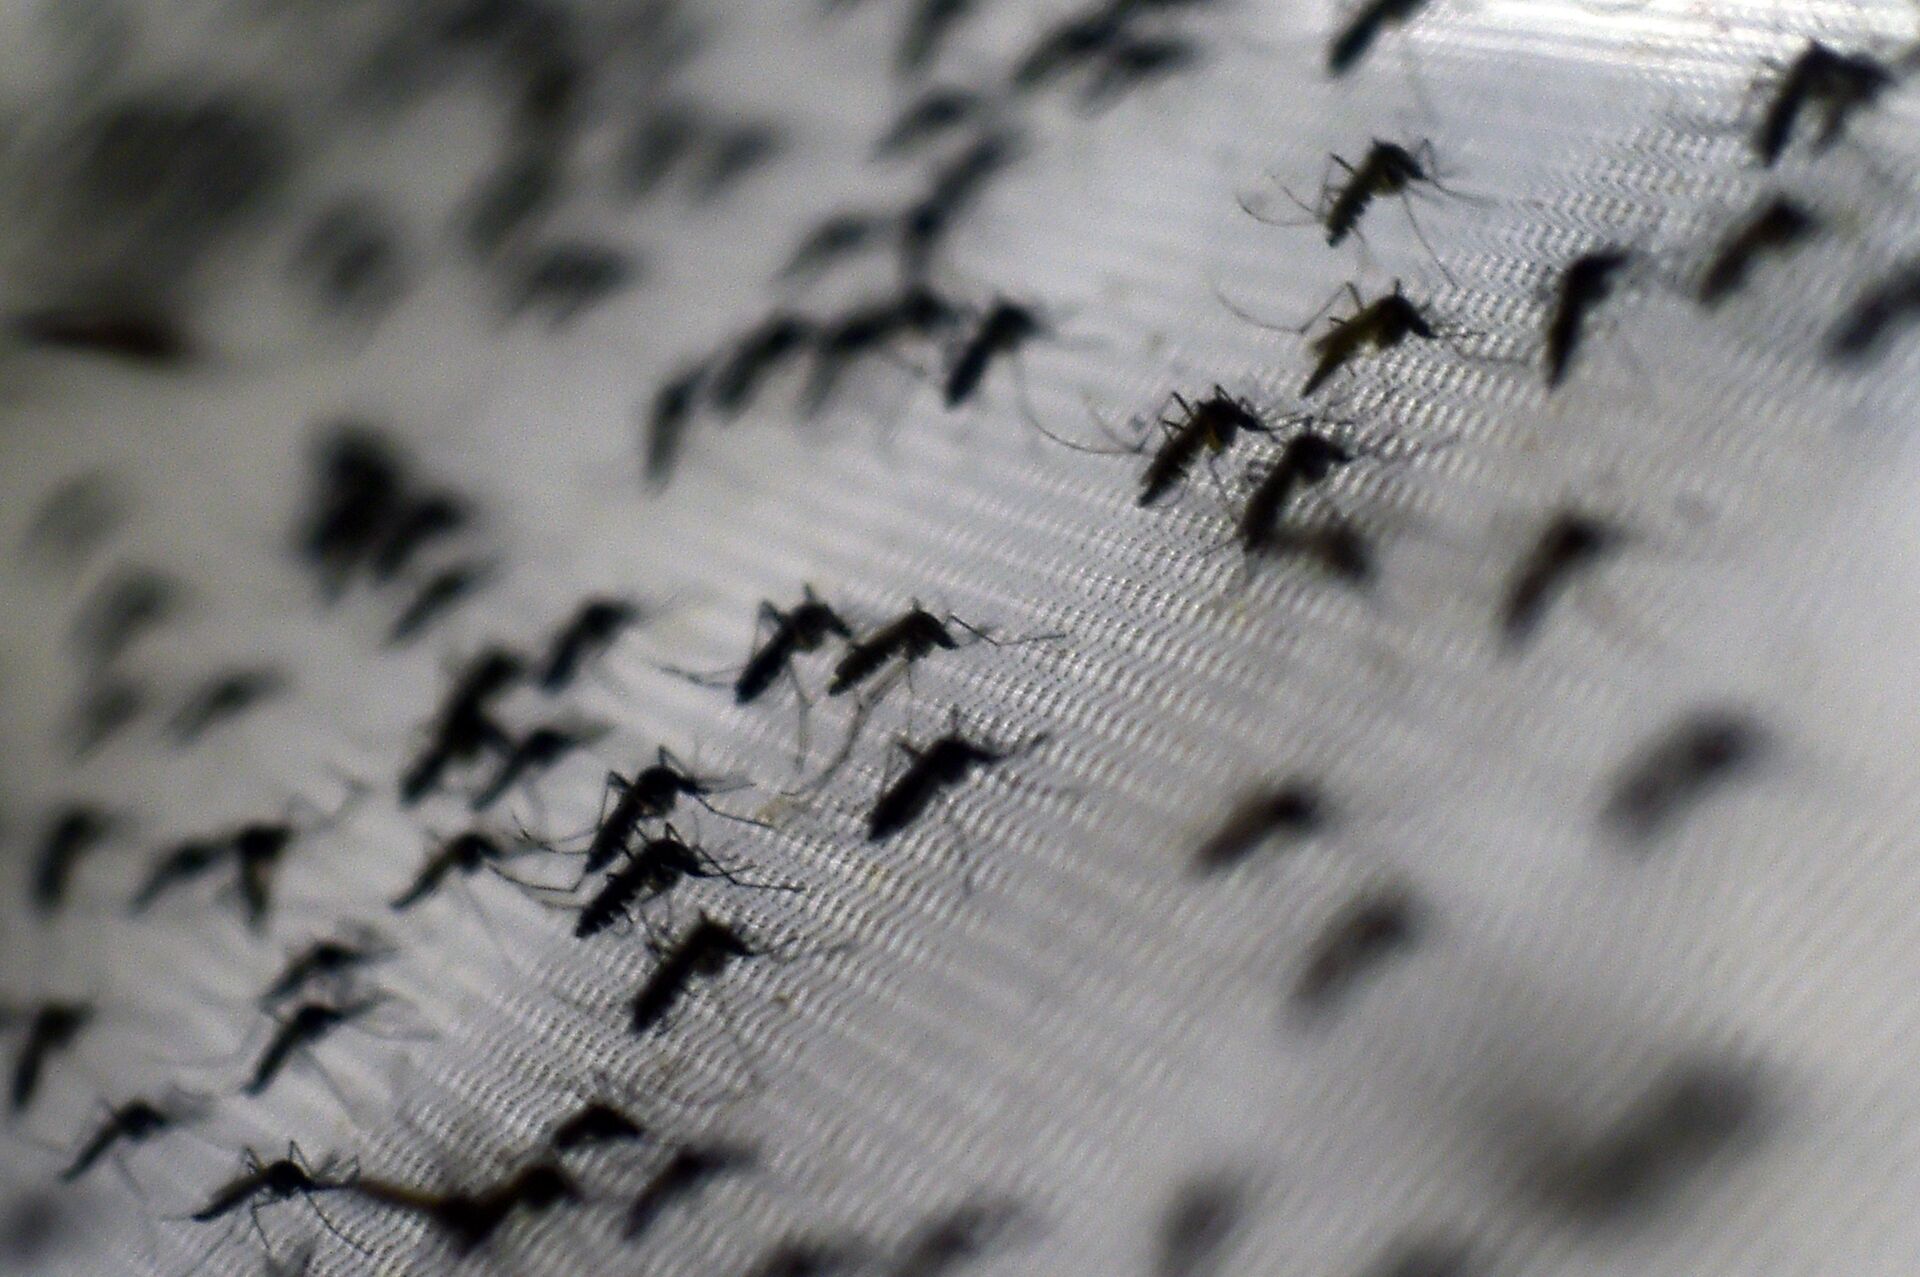 Cientistas chineses: tecnologia nuclear poderá ajudar a erradicar doenças transmitidas por mosquitos - Sputnik Brasil, 1920, 22.08.2021